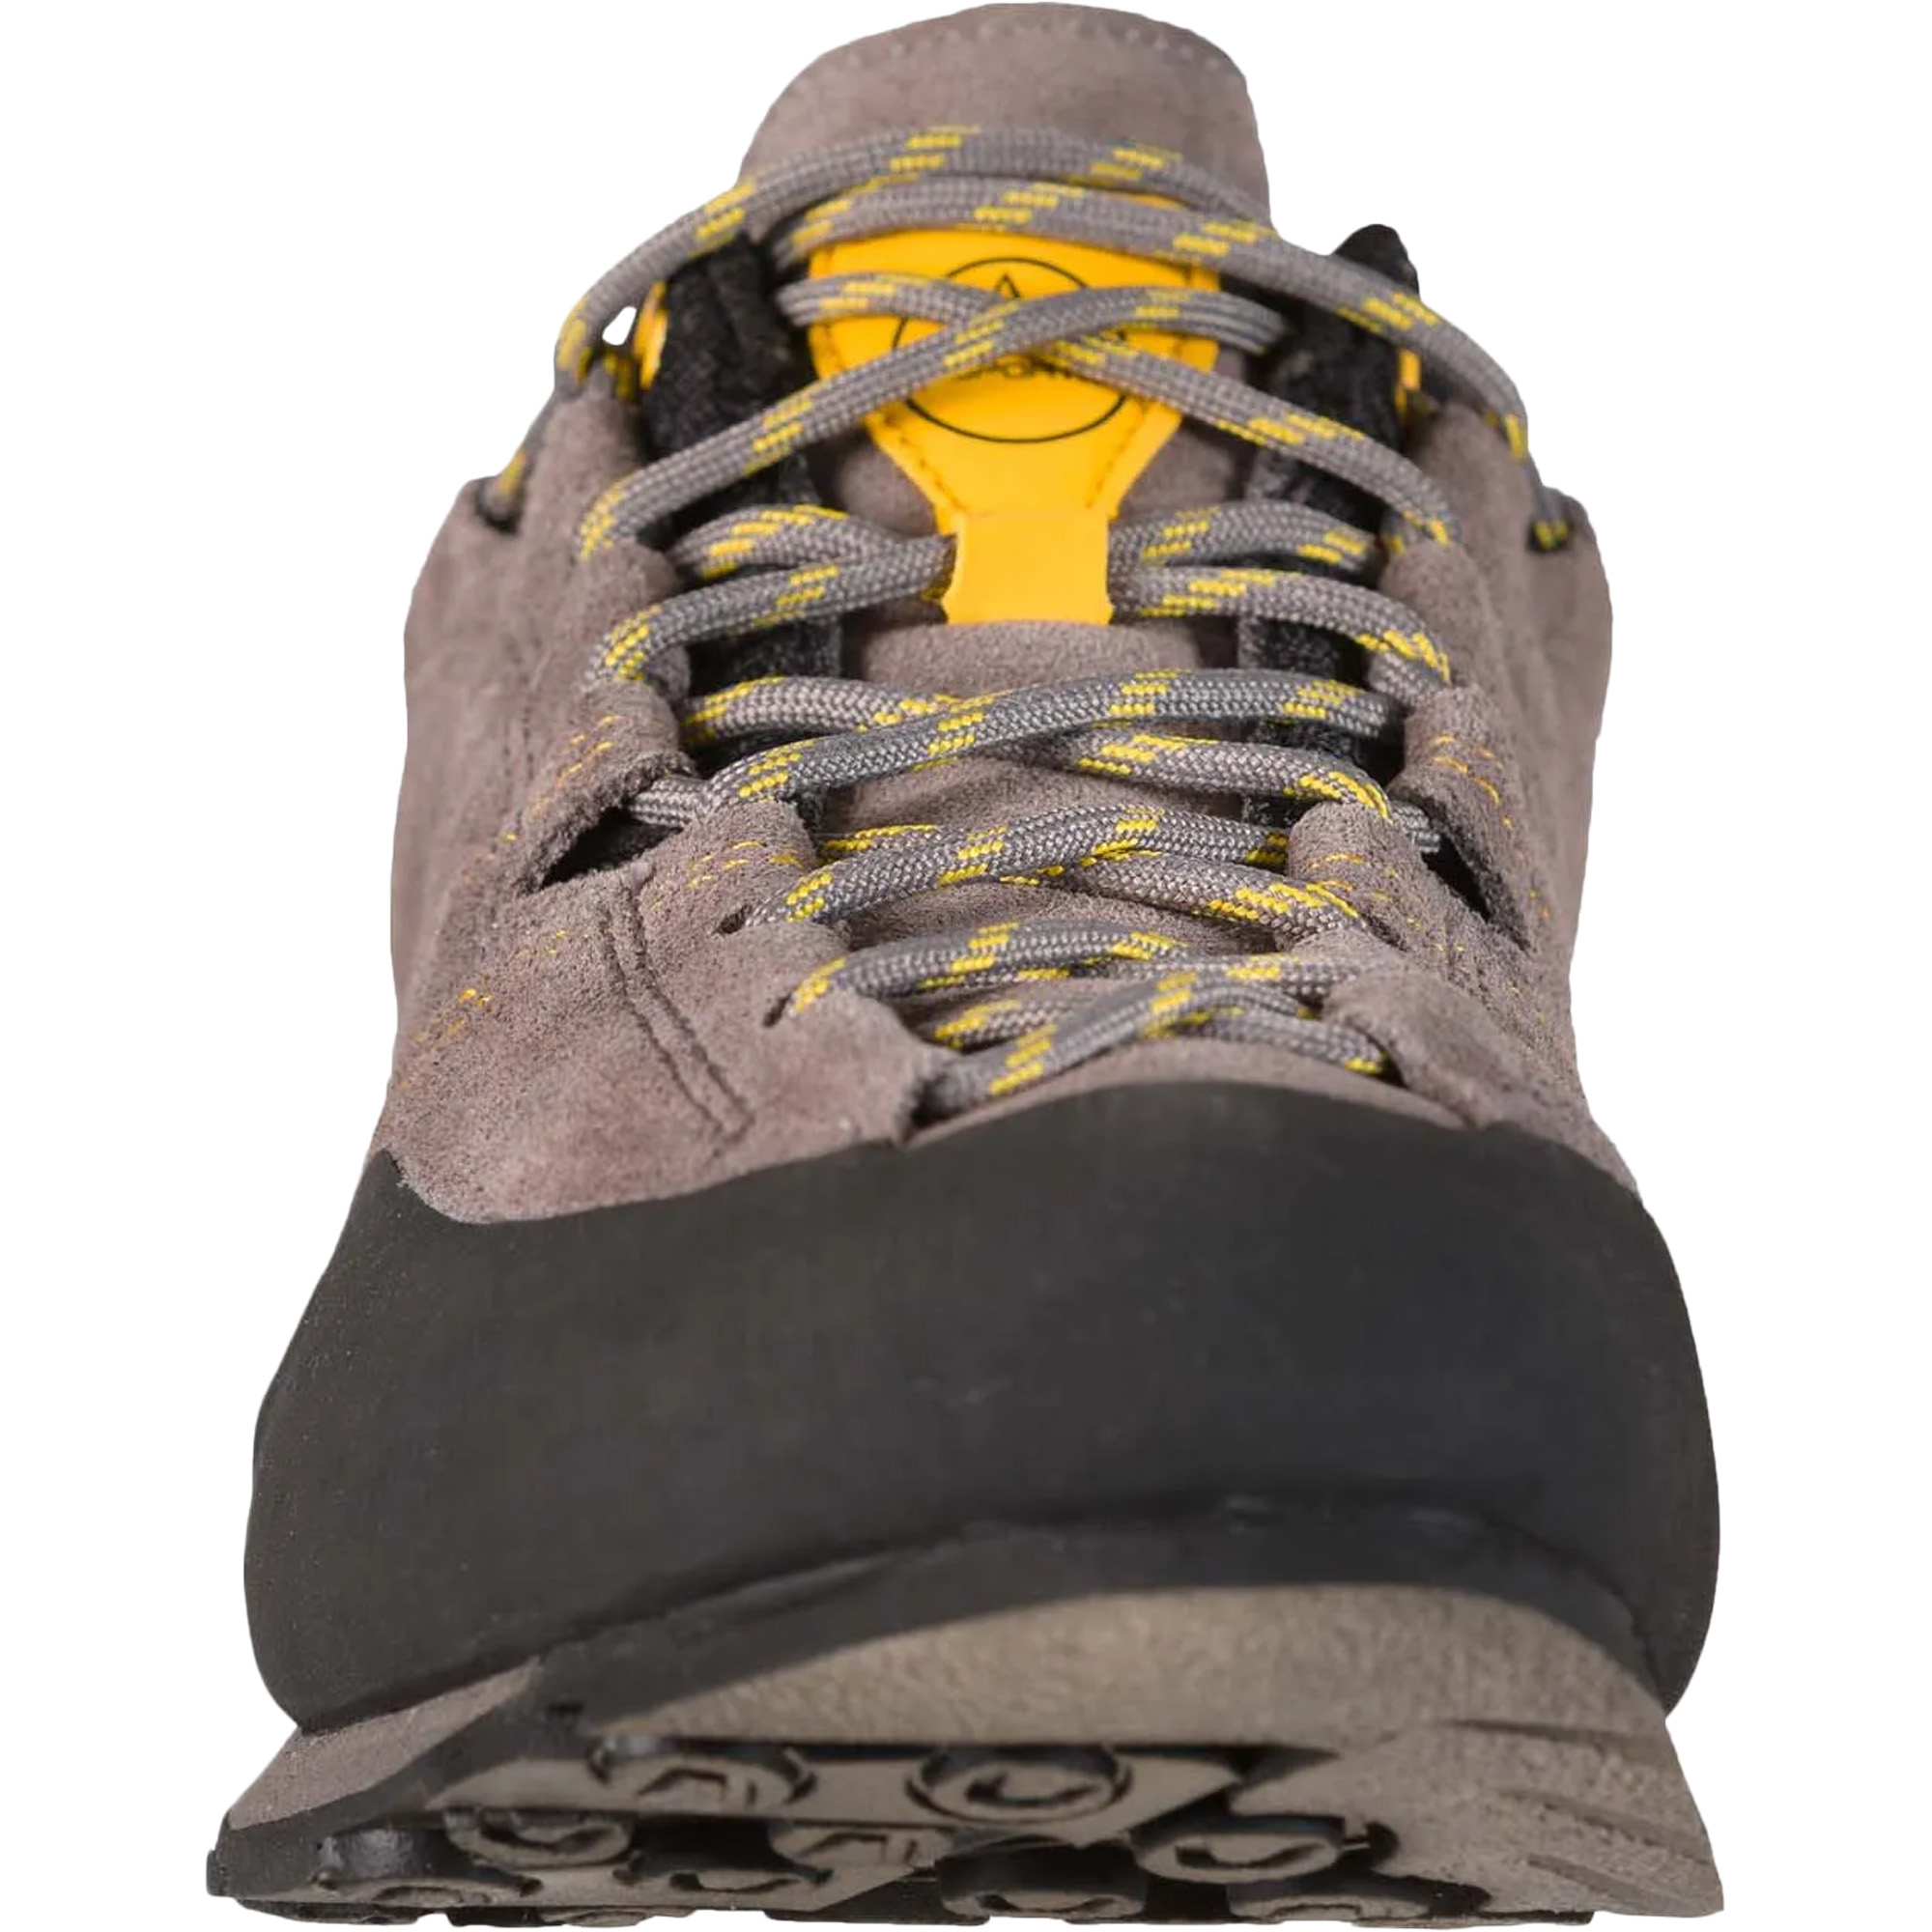 La Sportiva Boulder X Approach/Walking Shoes